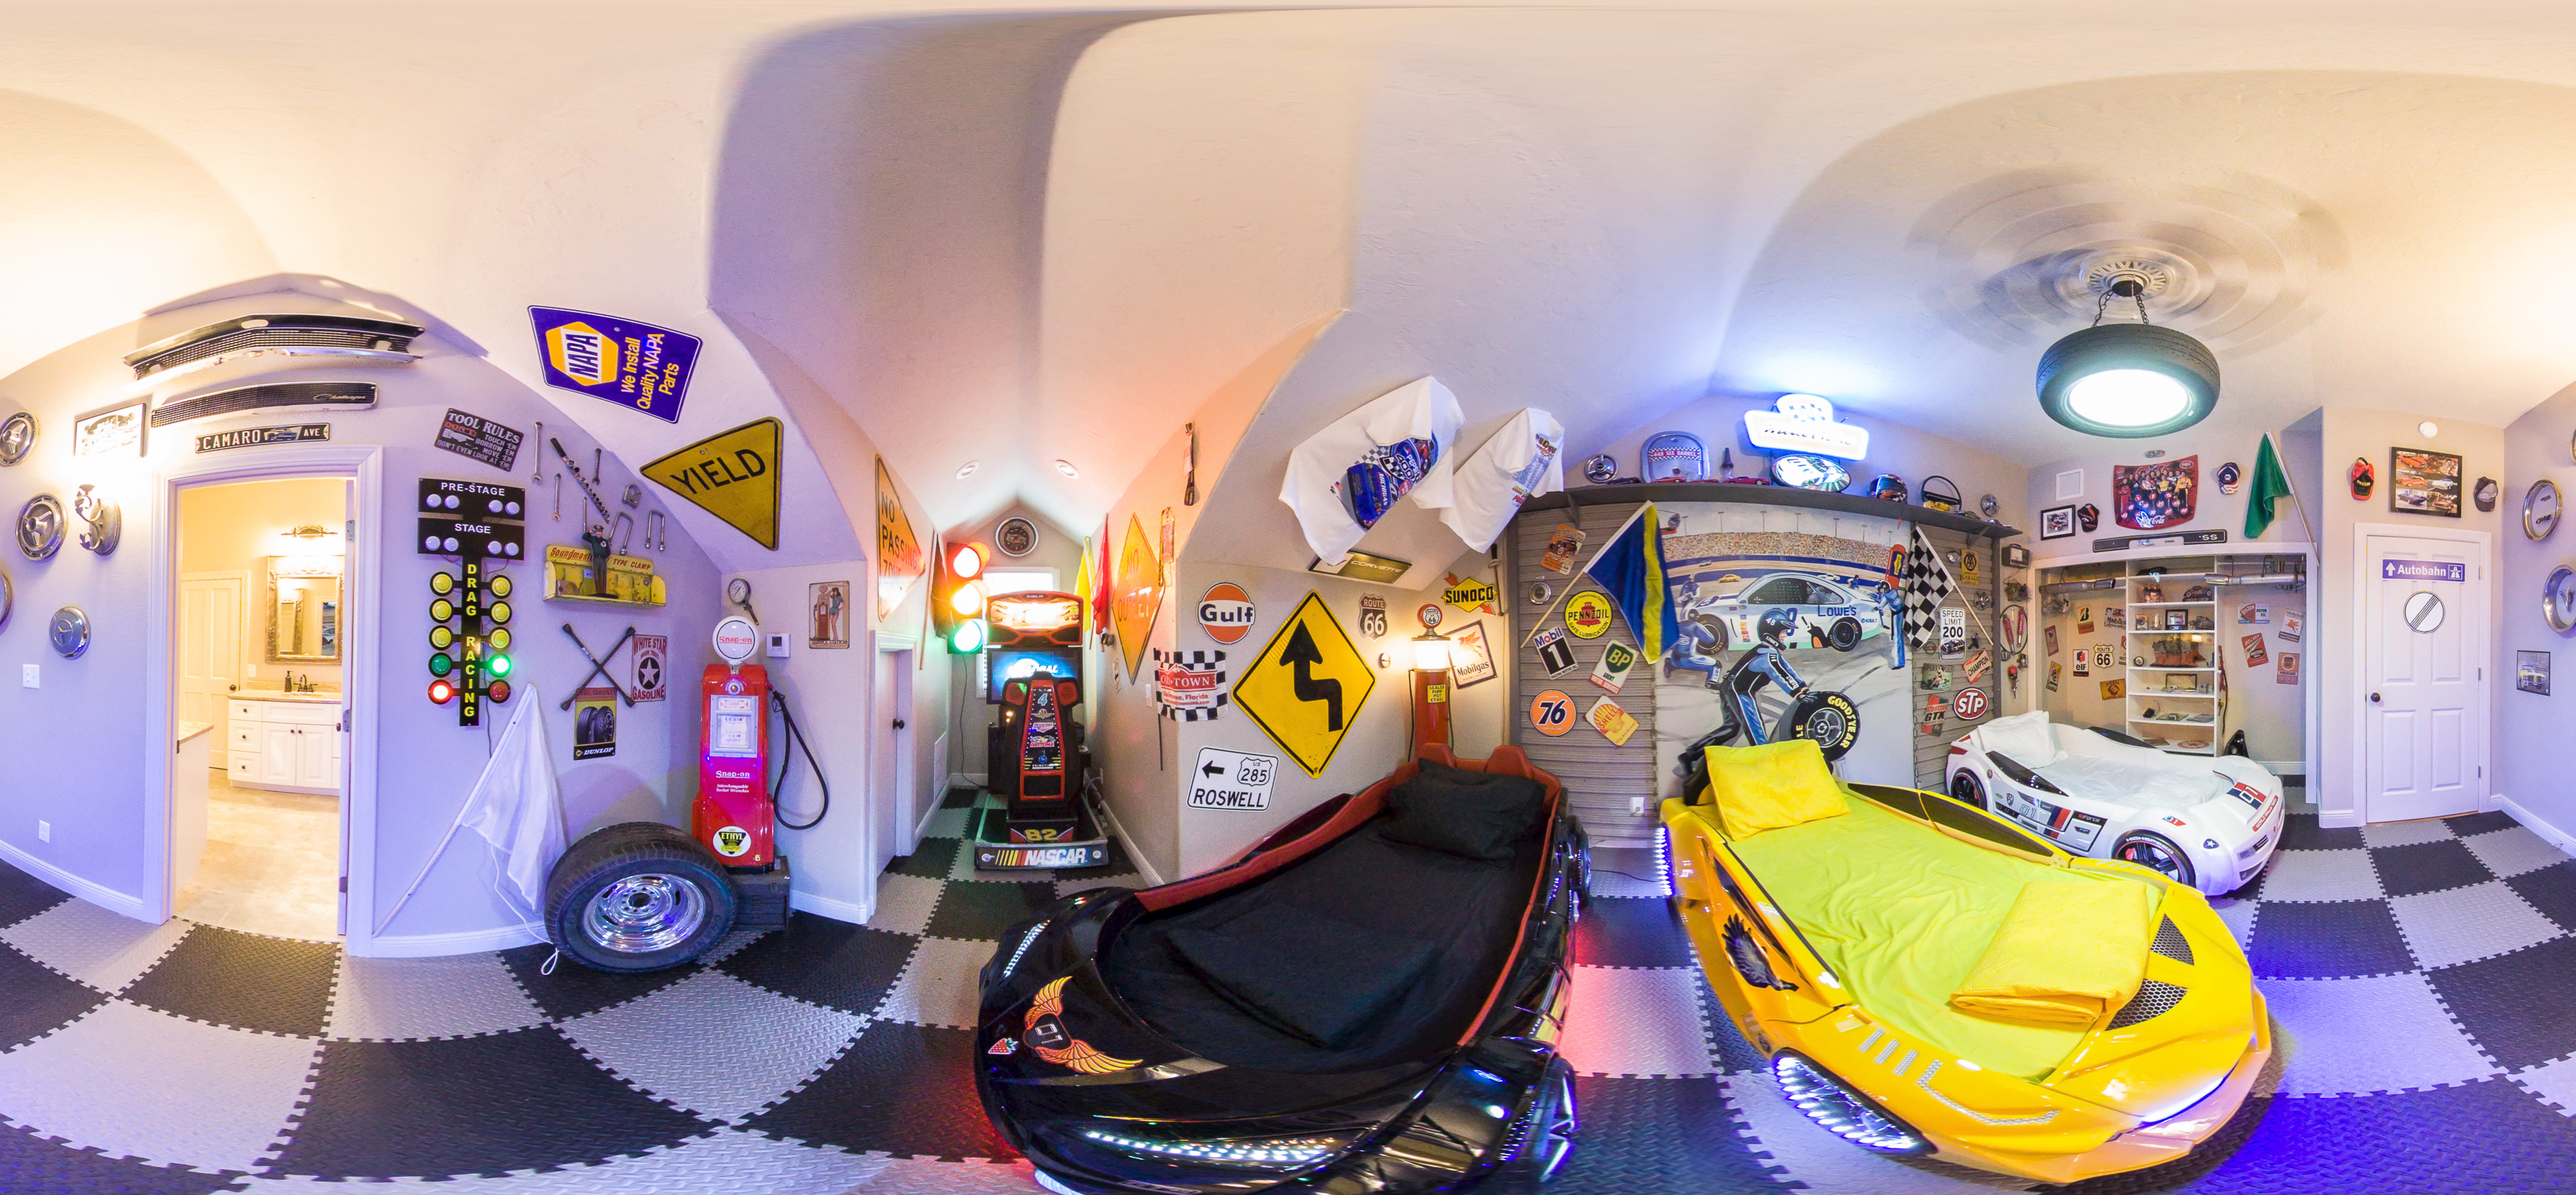 Nascar Room  - a race car bedroom